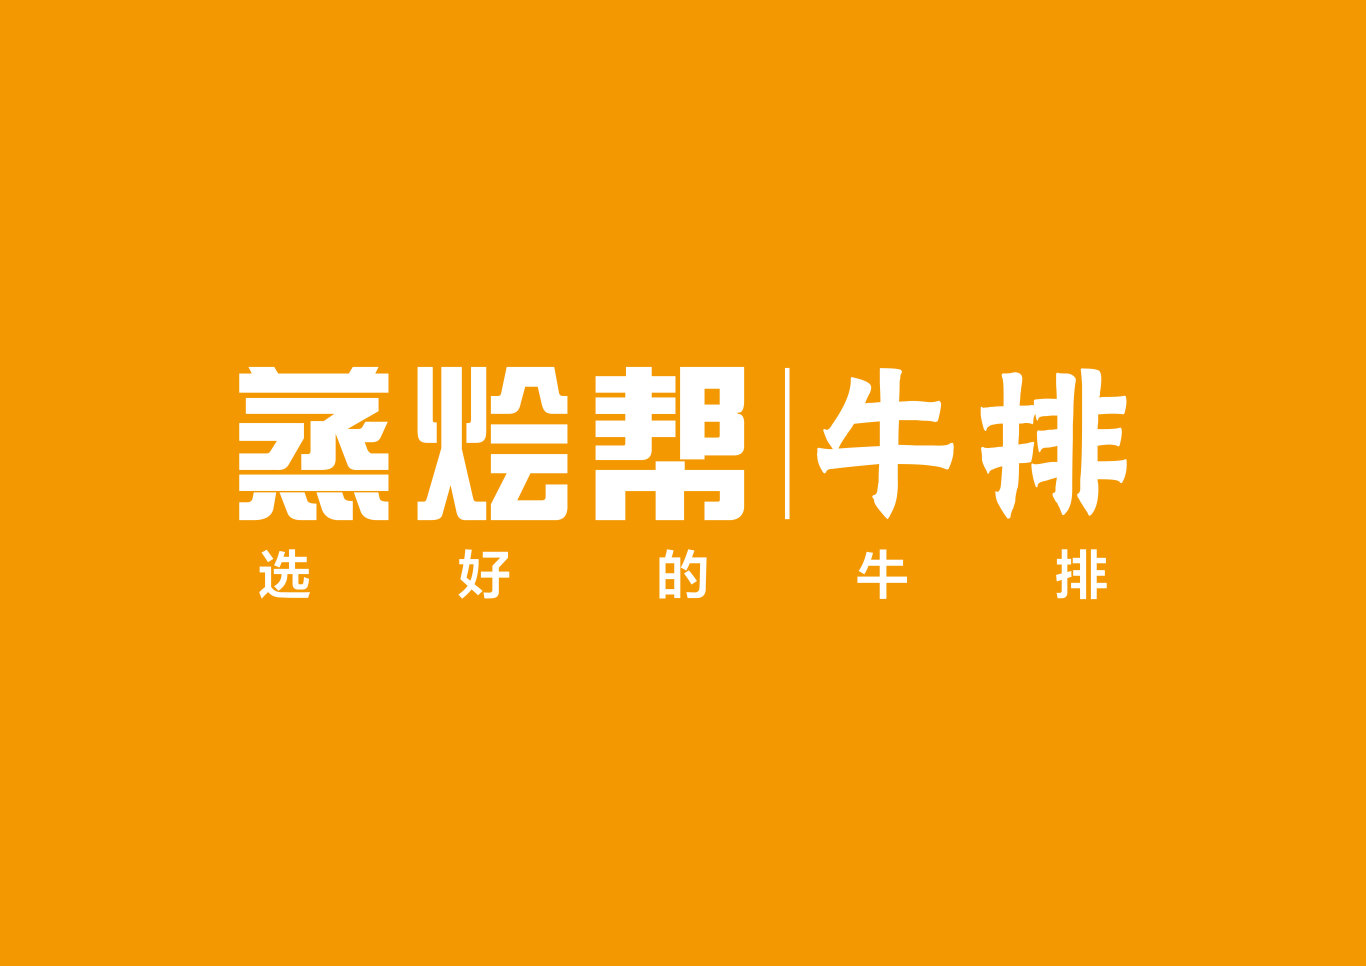 蒸烩帮牛排logo设计图2